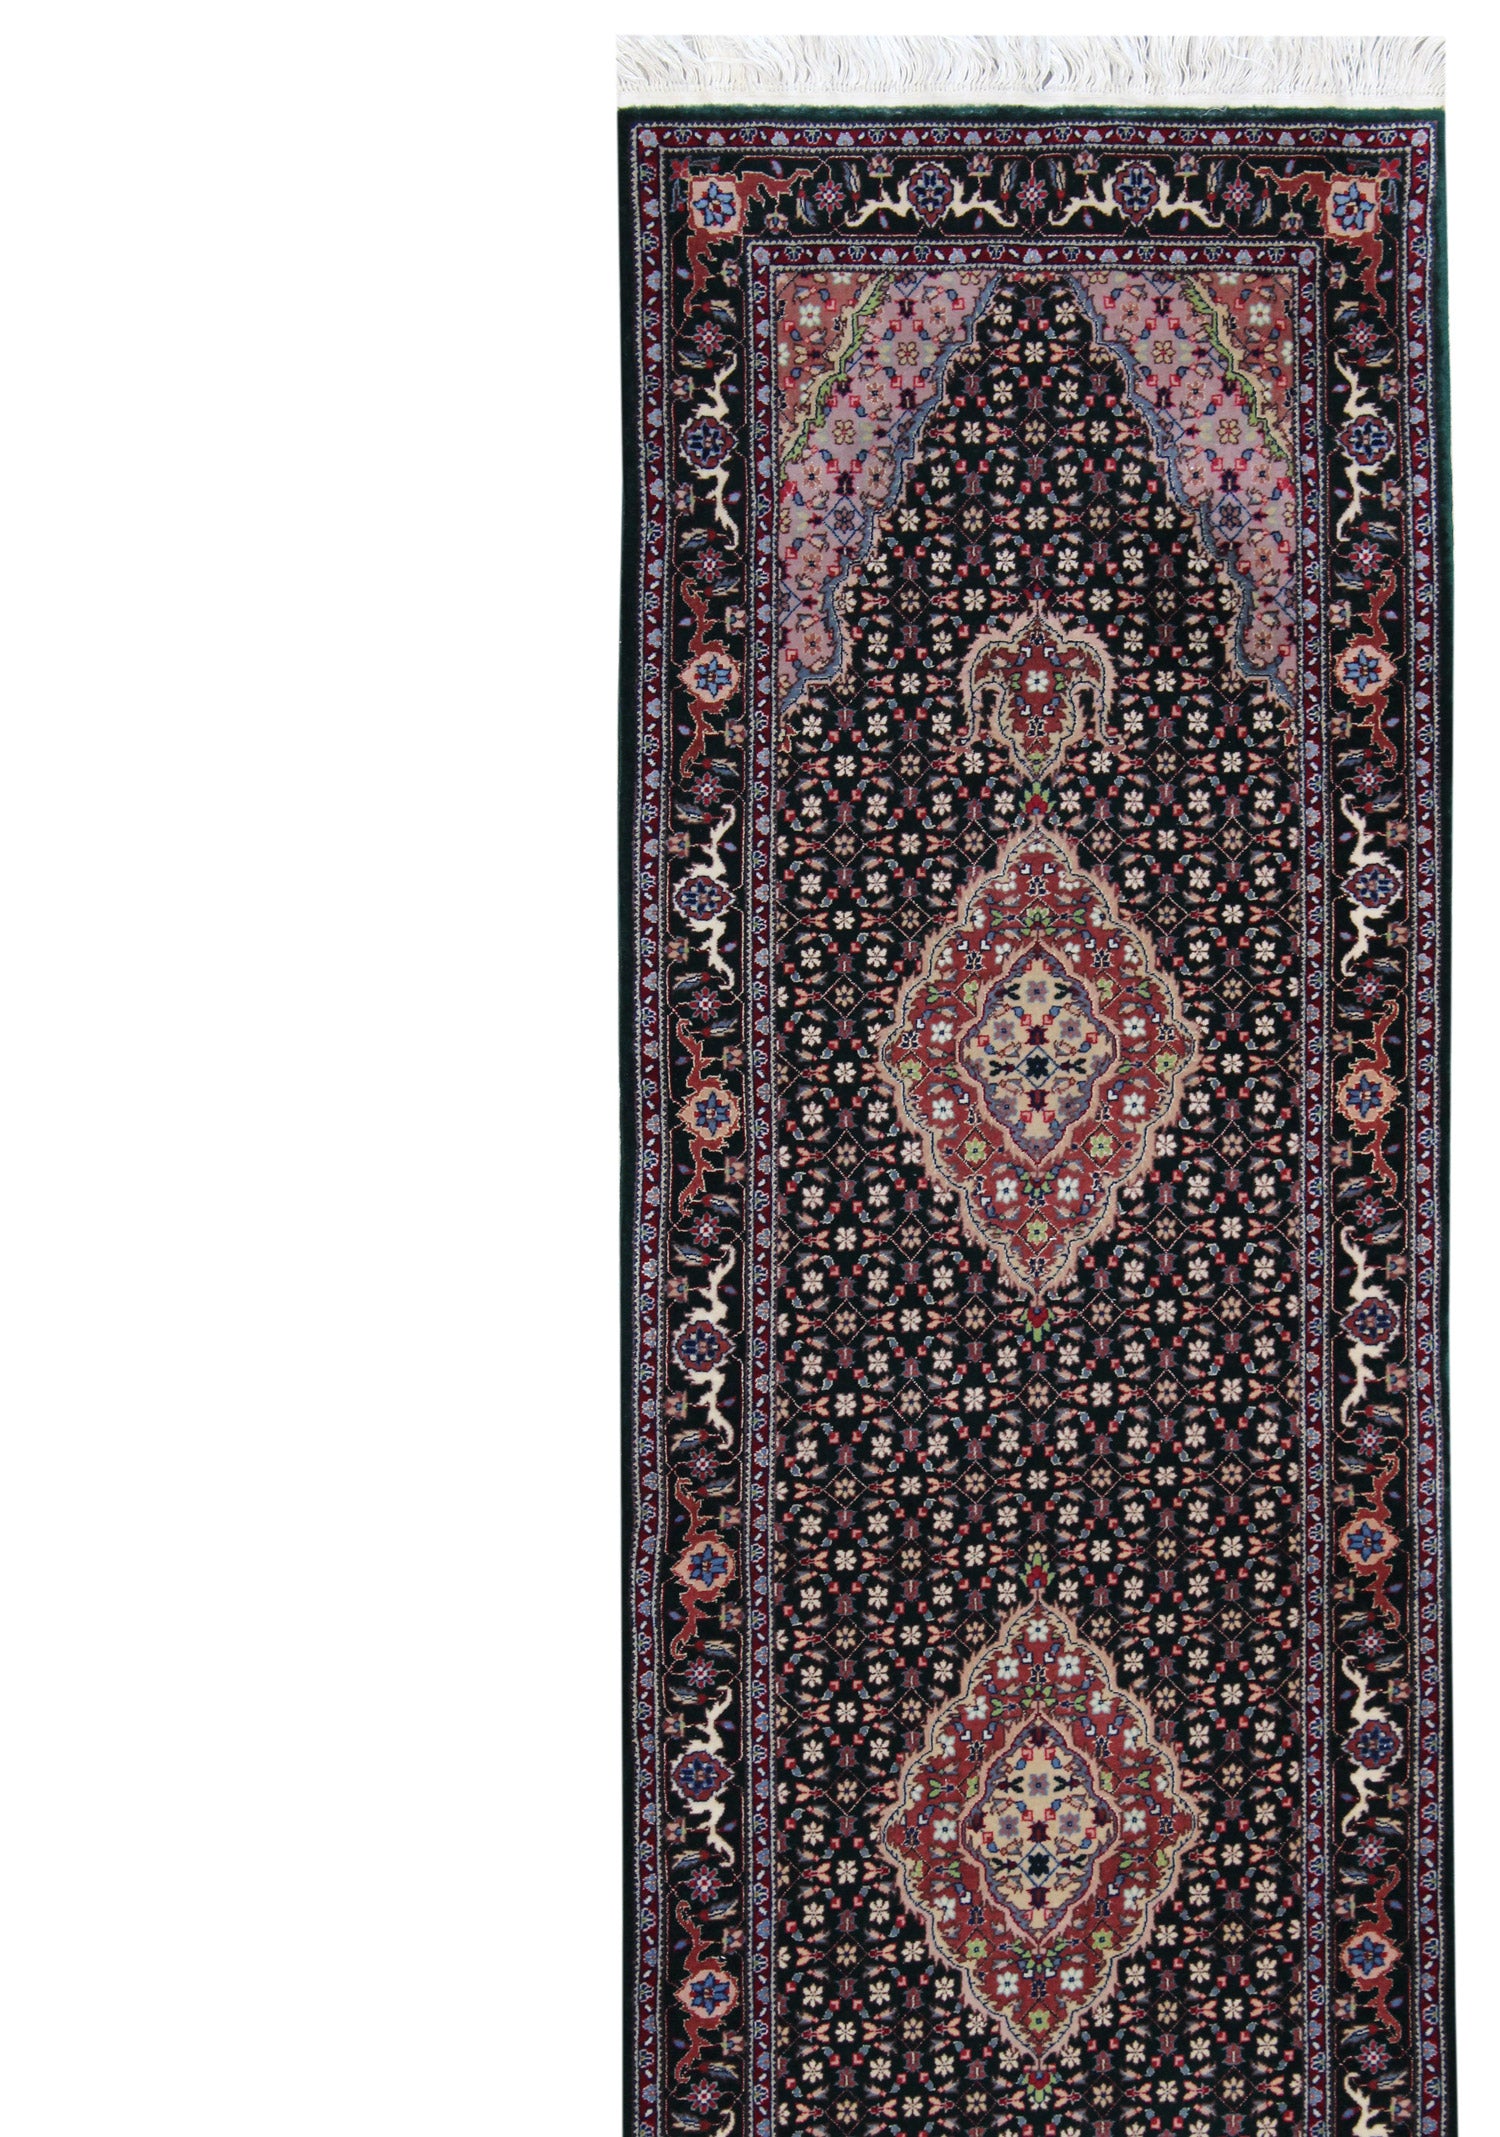 Mahi Tabriz Handwoven Traditional Rug, J59414